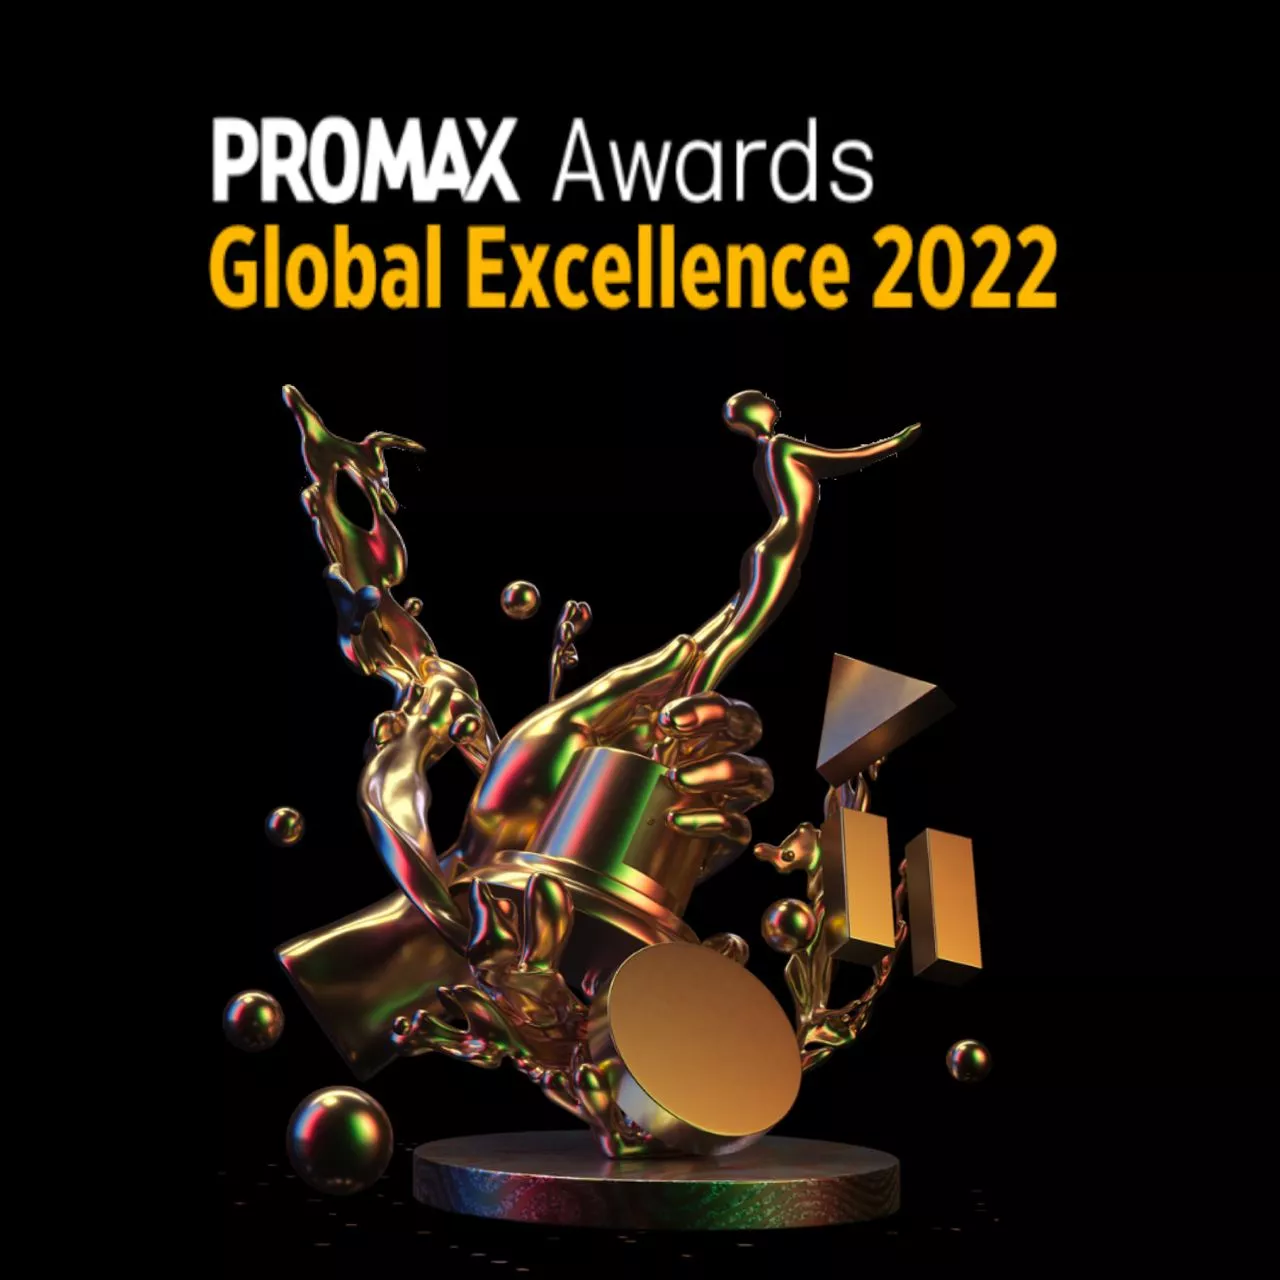 Українська медіагрупа Starlight Media отримала золото та срібло Promax Awards